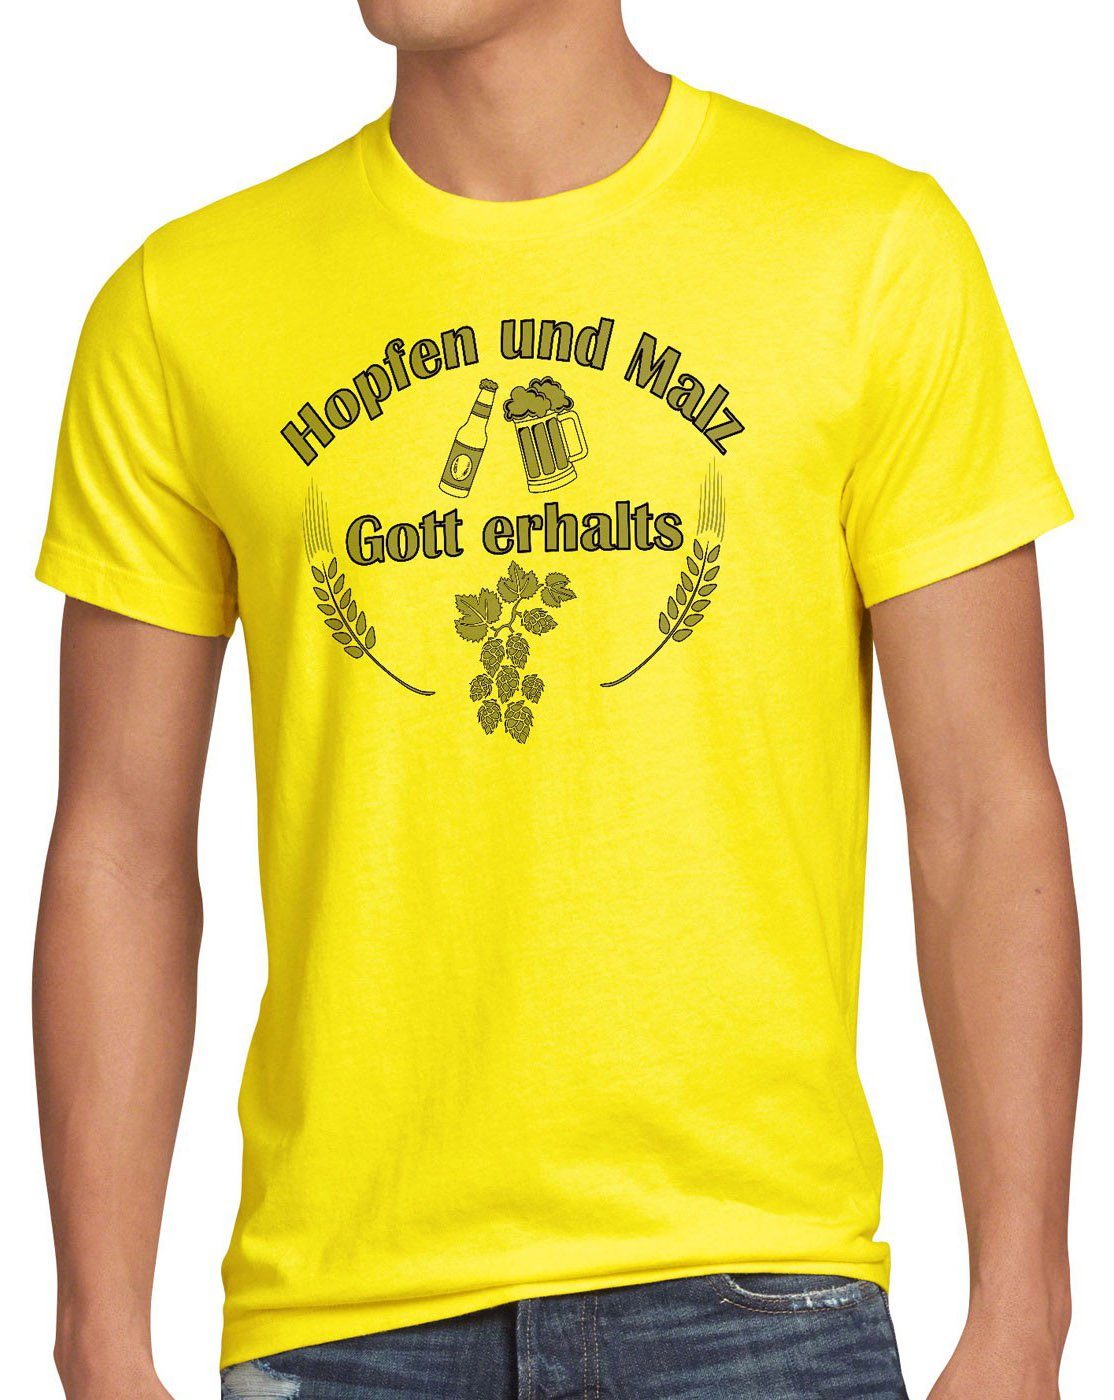 style3 Print-Shirt Herren T-Shirt Hopfen und Malz Gott erhalts Fun Funshirt Bier Spruchshirt Spruch gelb